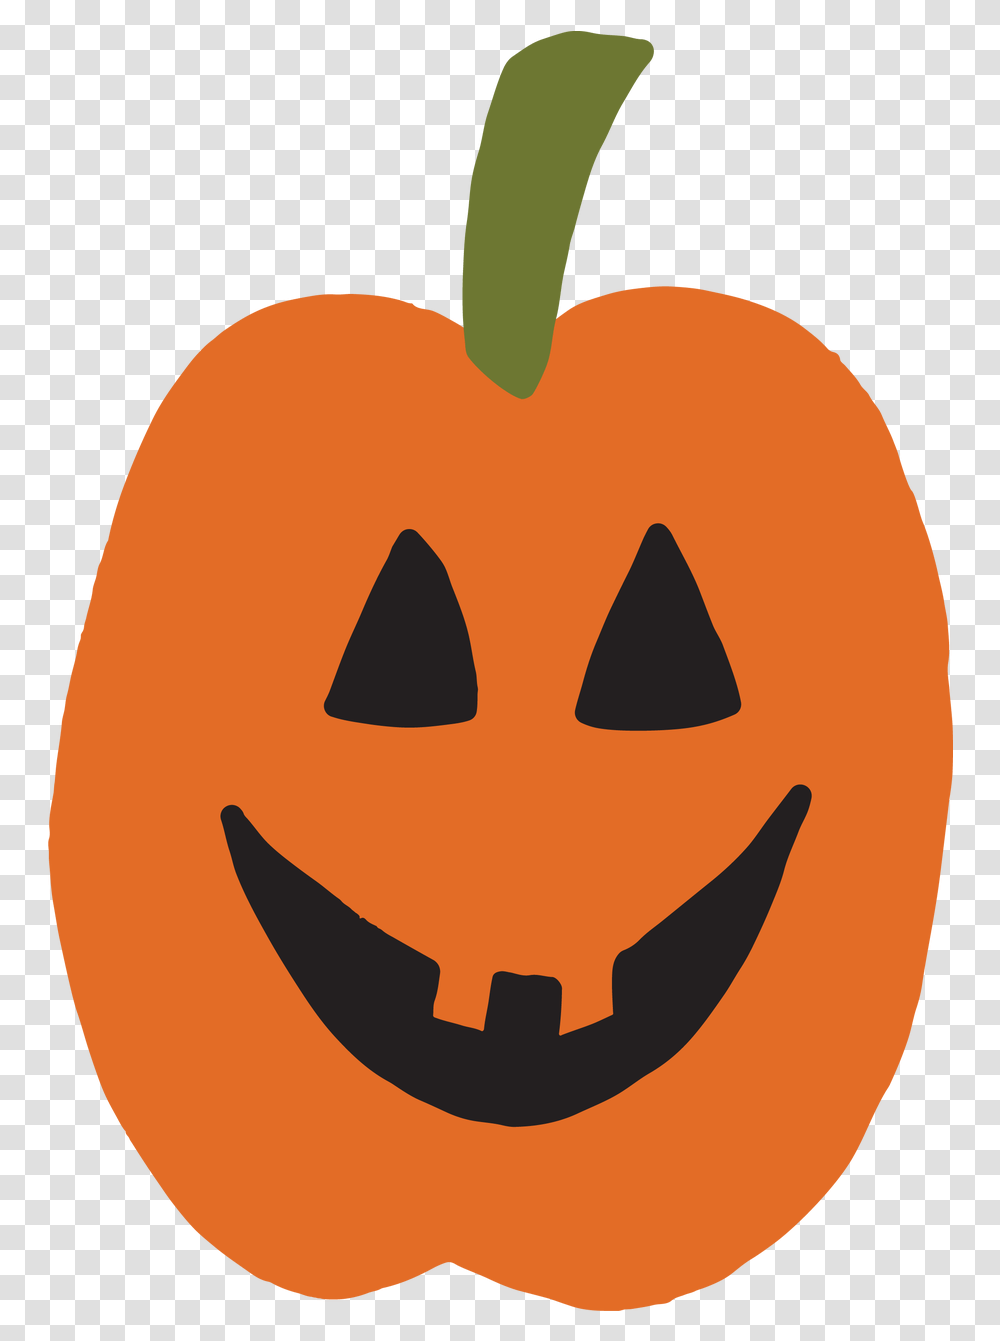 Halloween Pumpkin 3 Svg Cut File, Vegetable, Plant, Food,  Transparent Png